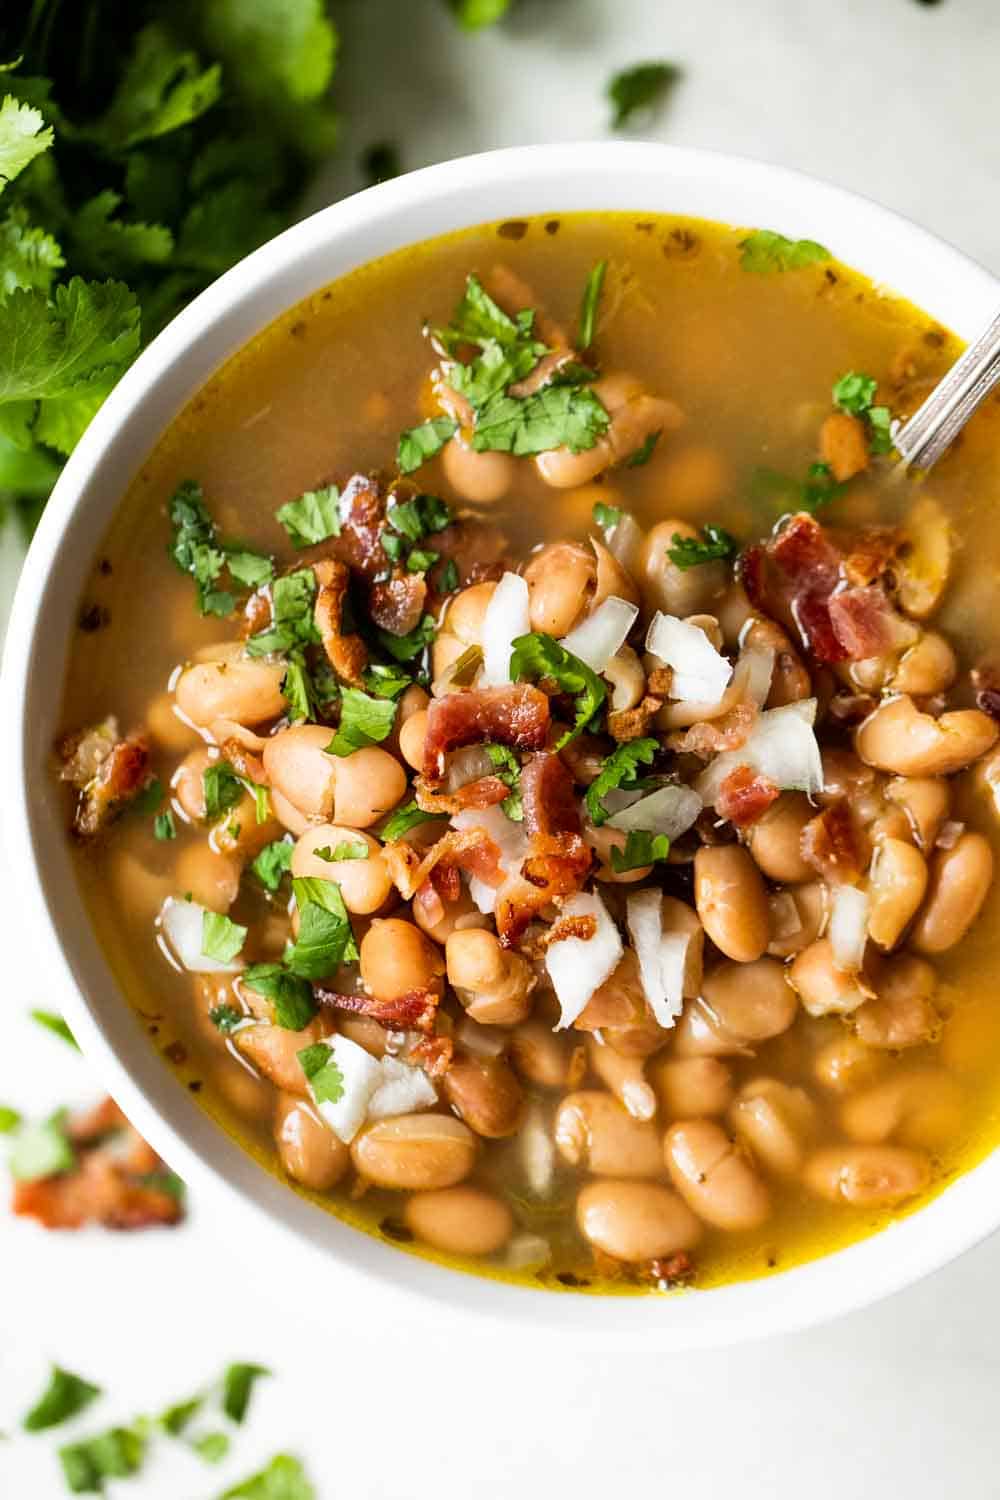 Top 4 Charro Beans Recipes